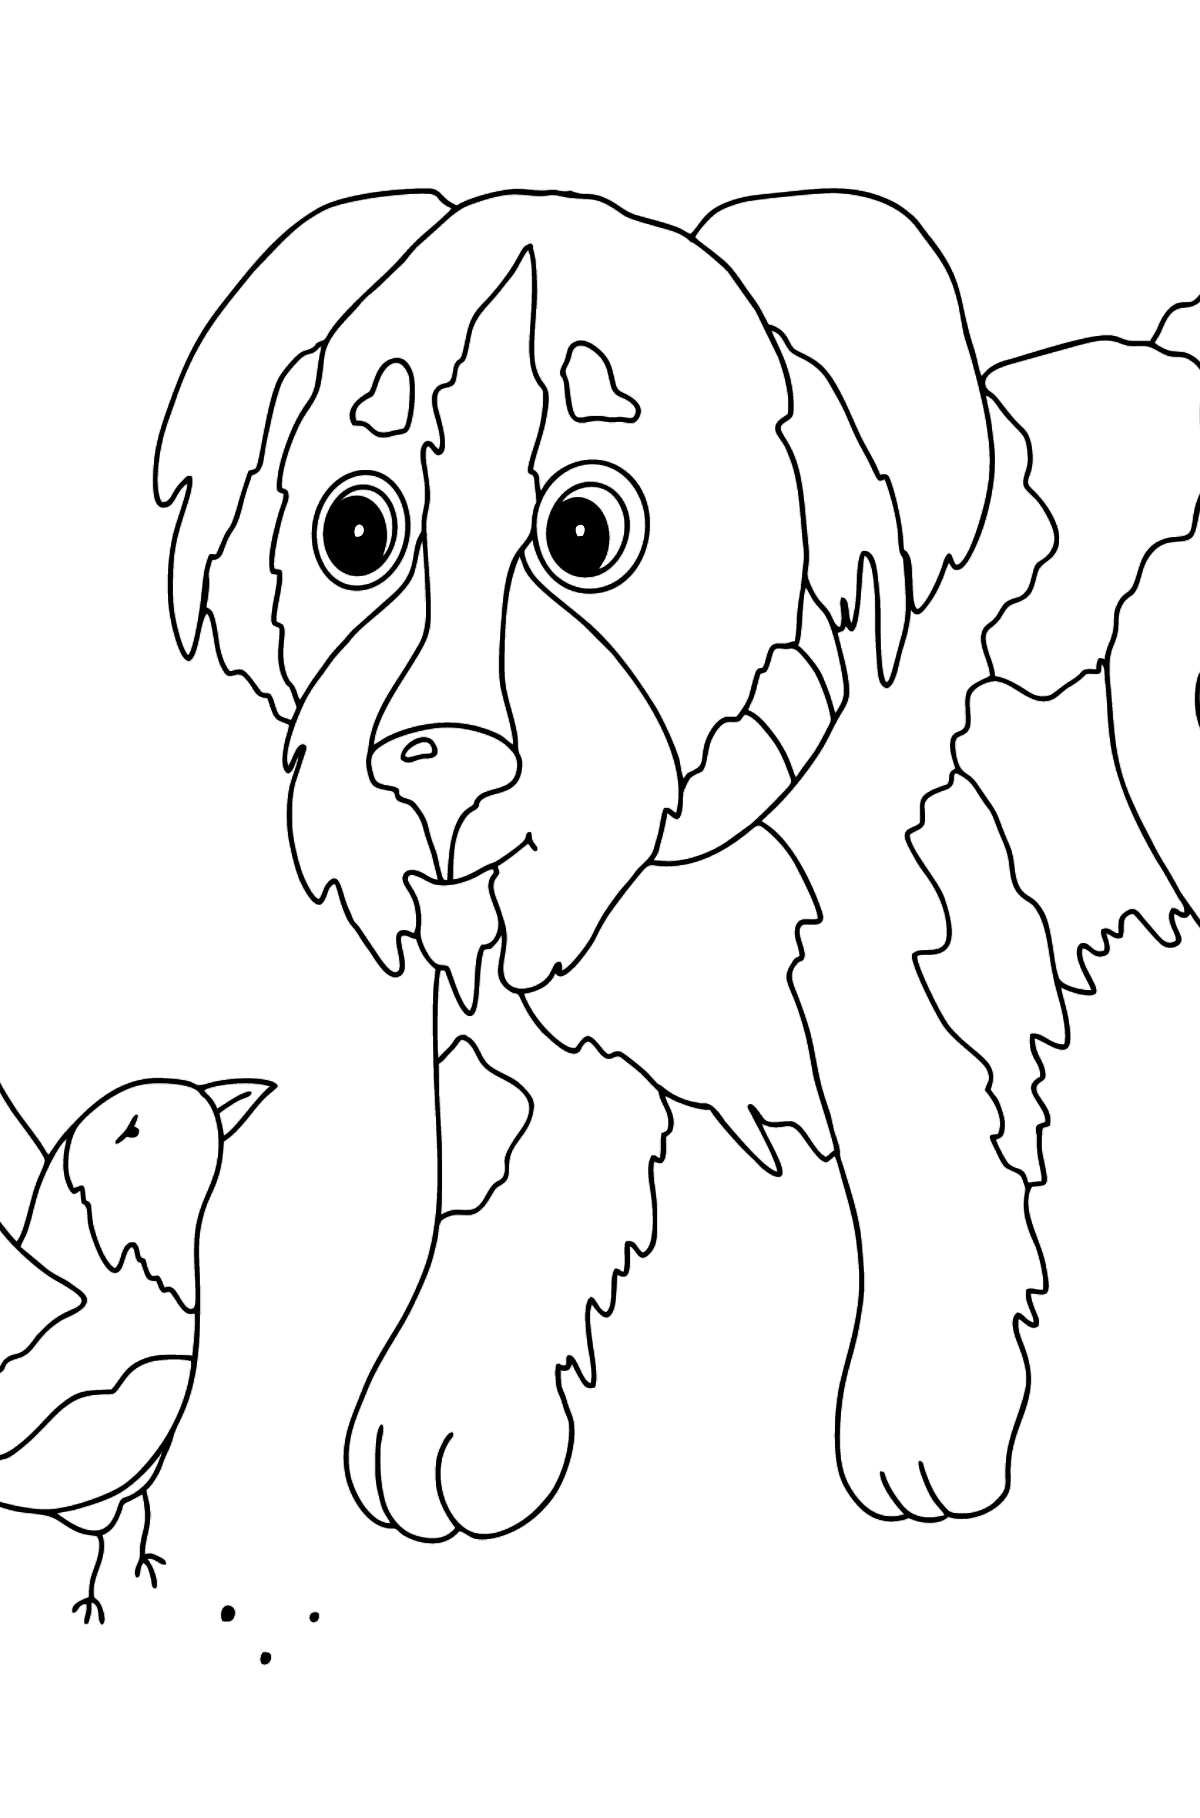 Раскраска задорная Собака - Картинки для Детей